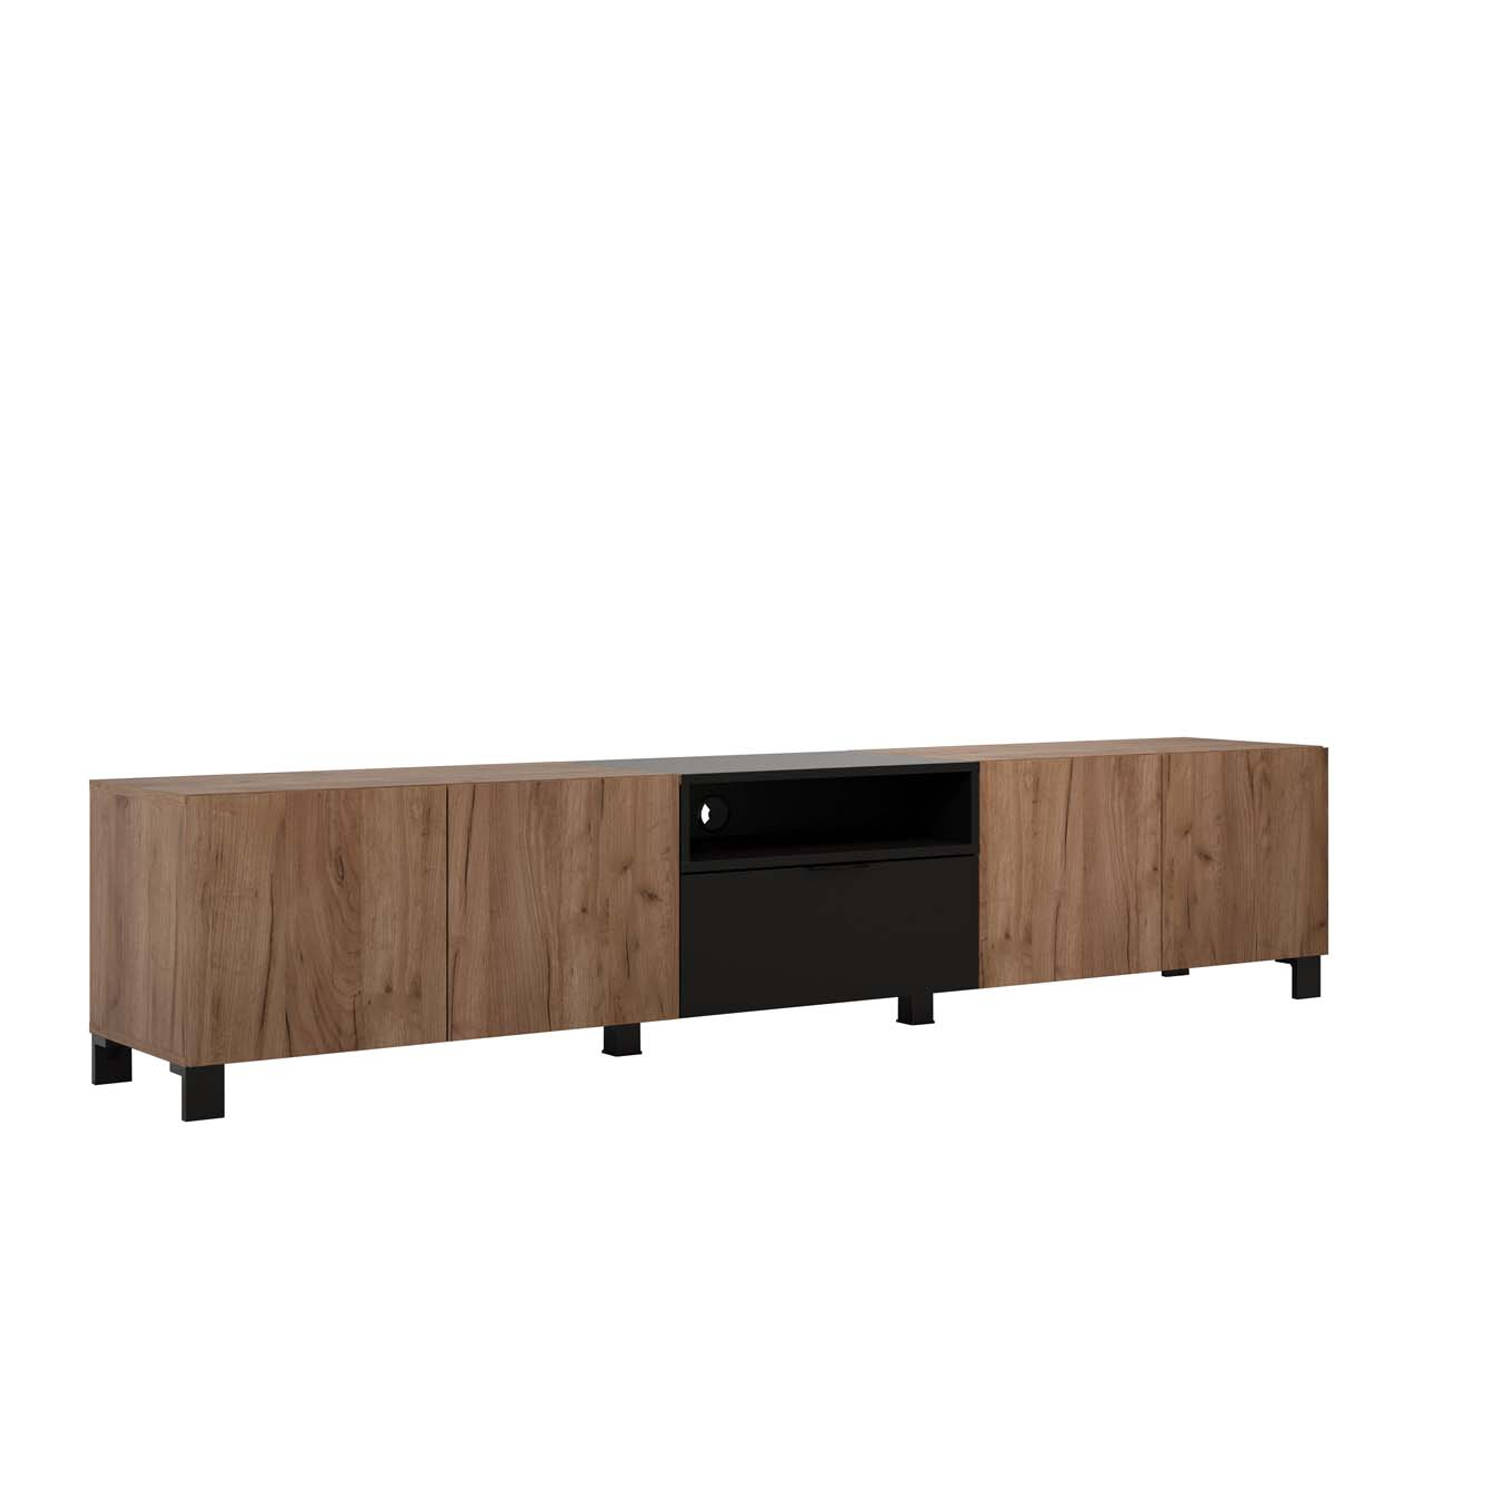 trendteam smart living Kendo tv-meubel, hout, bruin/zwart, 227 x 47 x 40 cm